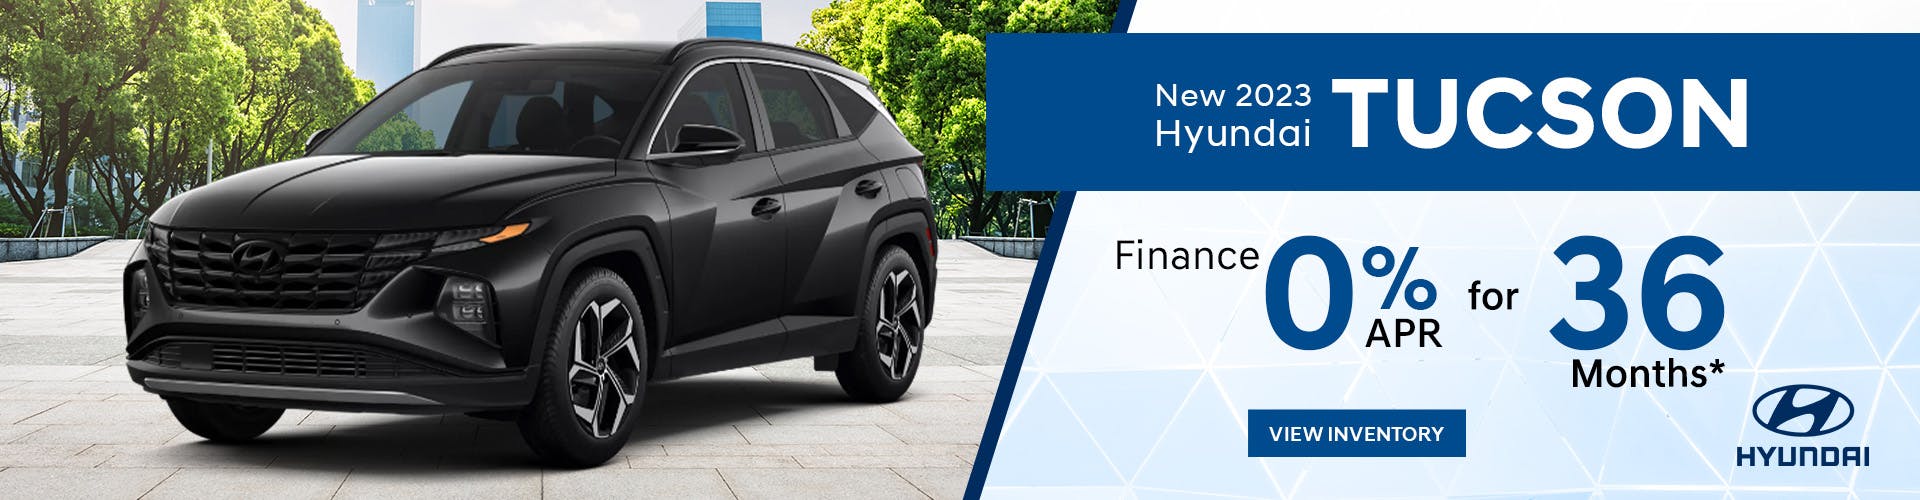 New 2023 Hyundai Tucson